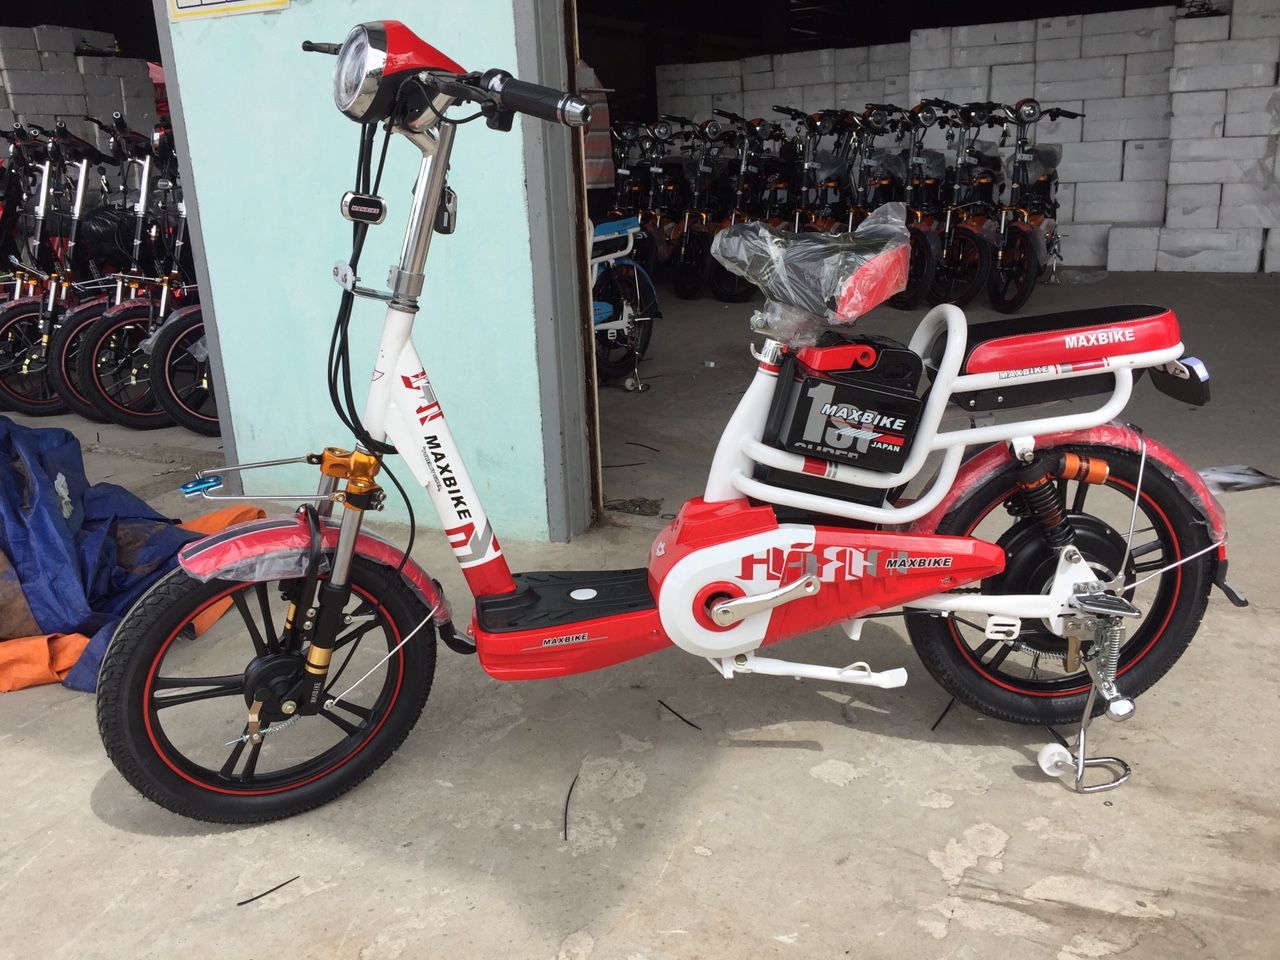 Tìm hiểu về mẫu xe đạp điện Maxbike chính hãng